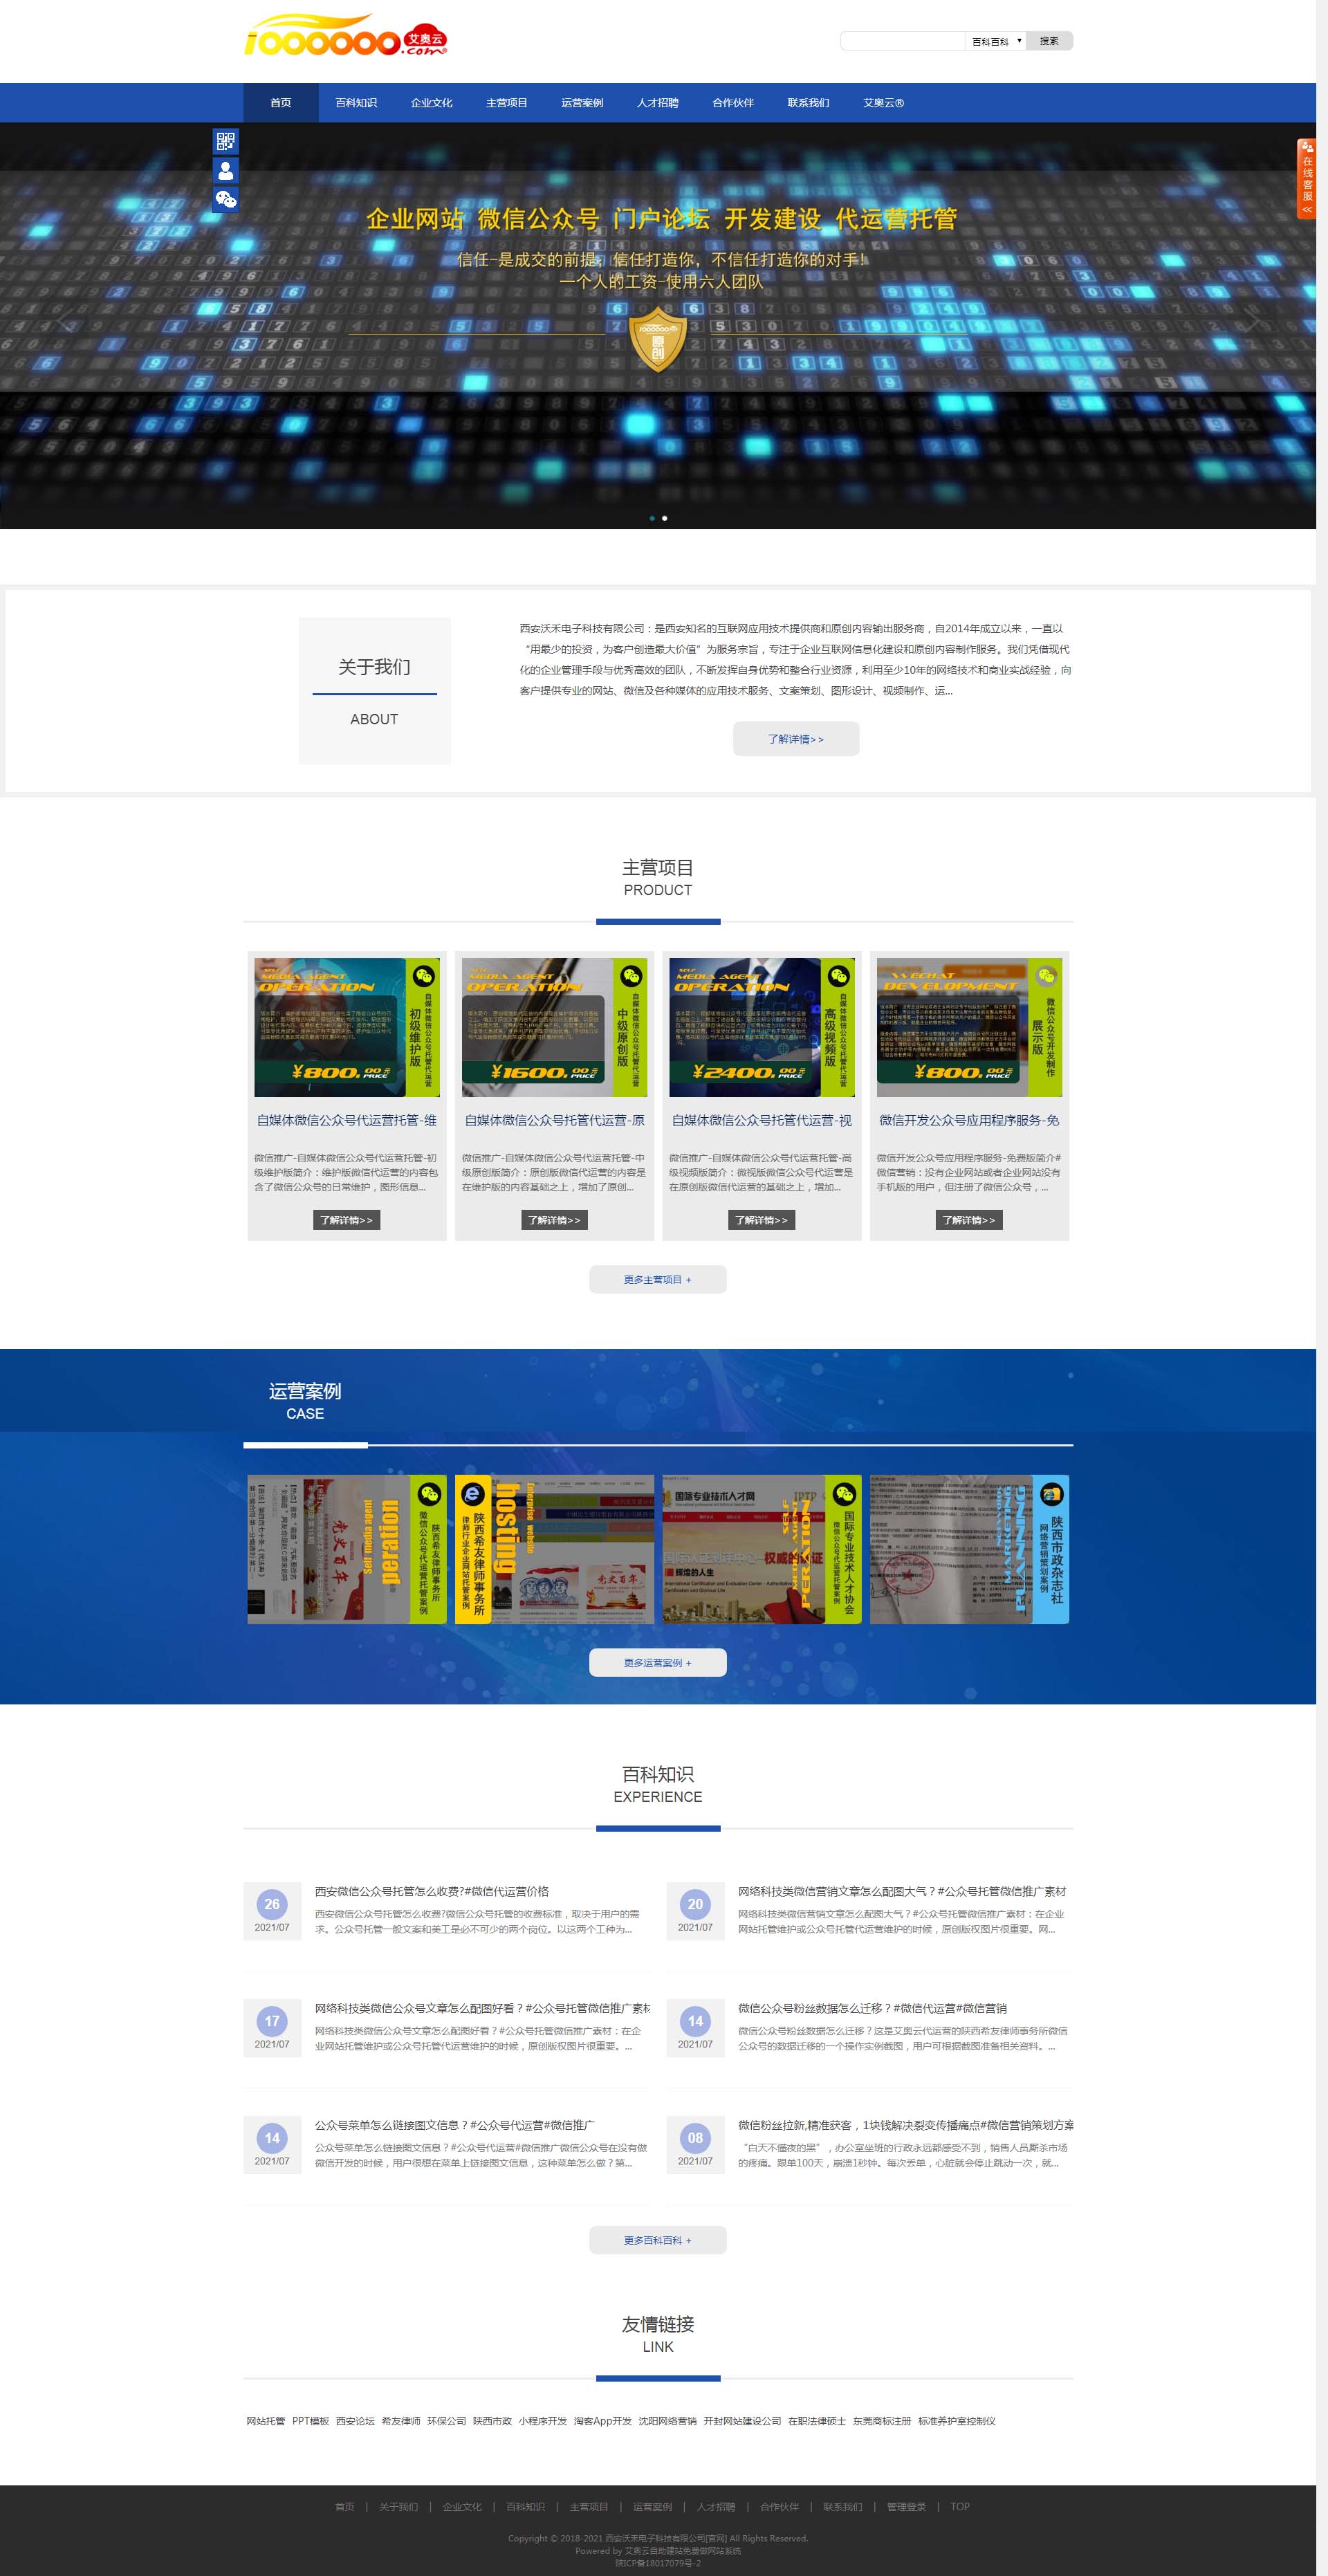 纯净蓝交互宽屏免费网站个人企业自助建站模板-057#网站建设.jpg